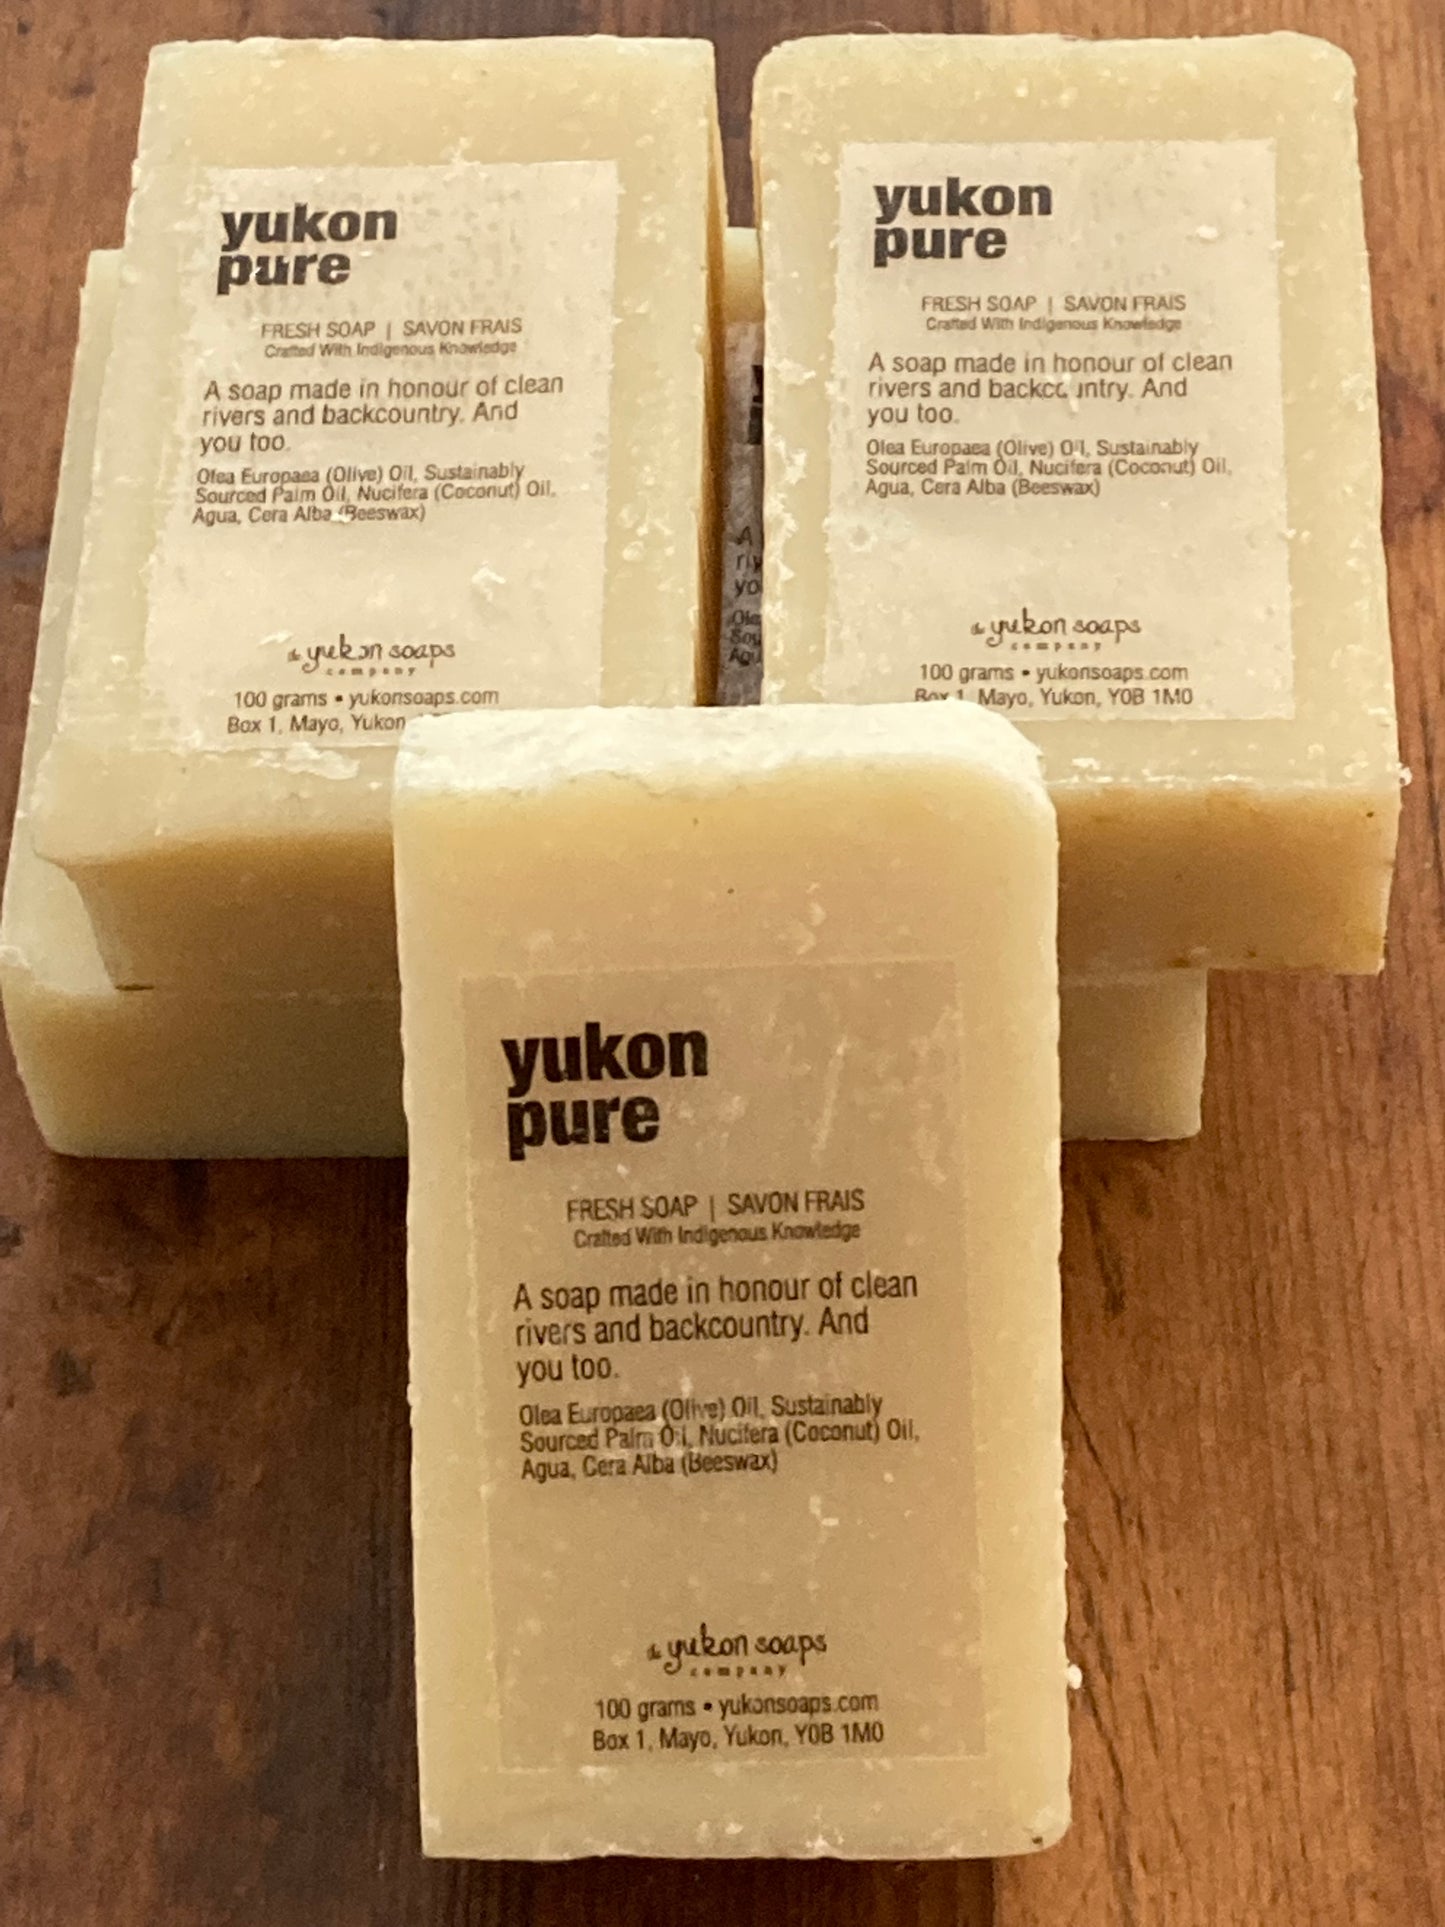 Yukon Soaps Company - YUKON PURE SOAP, EcoHome